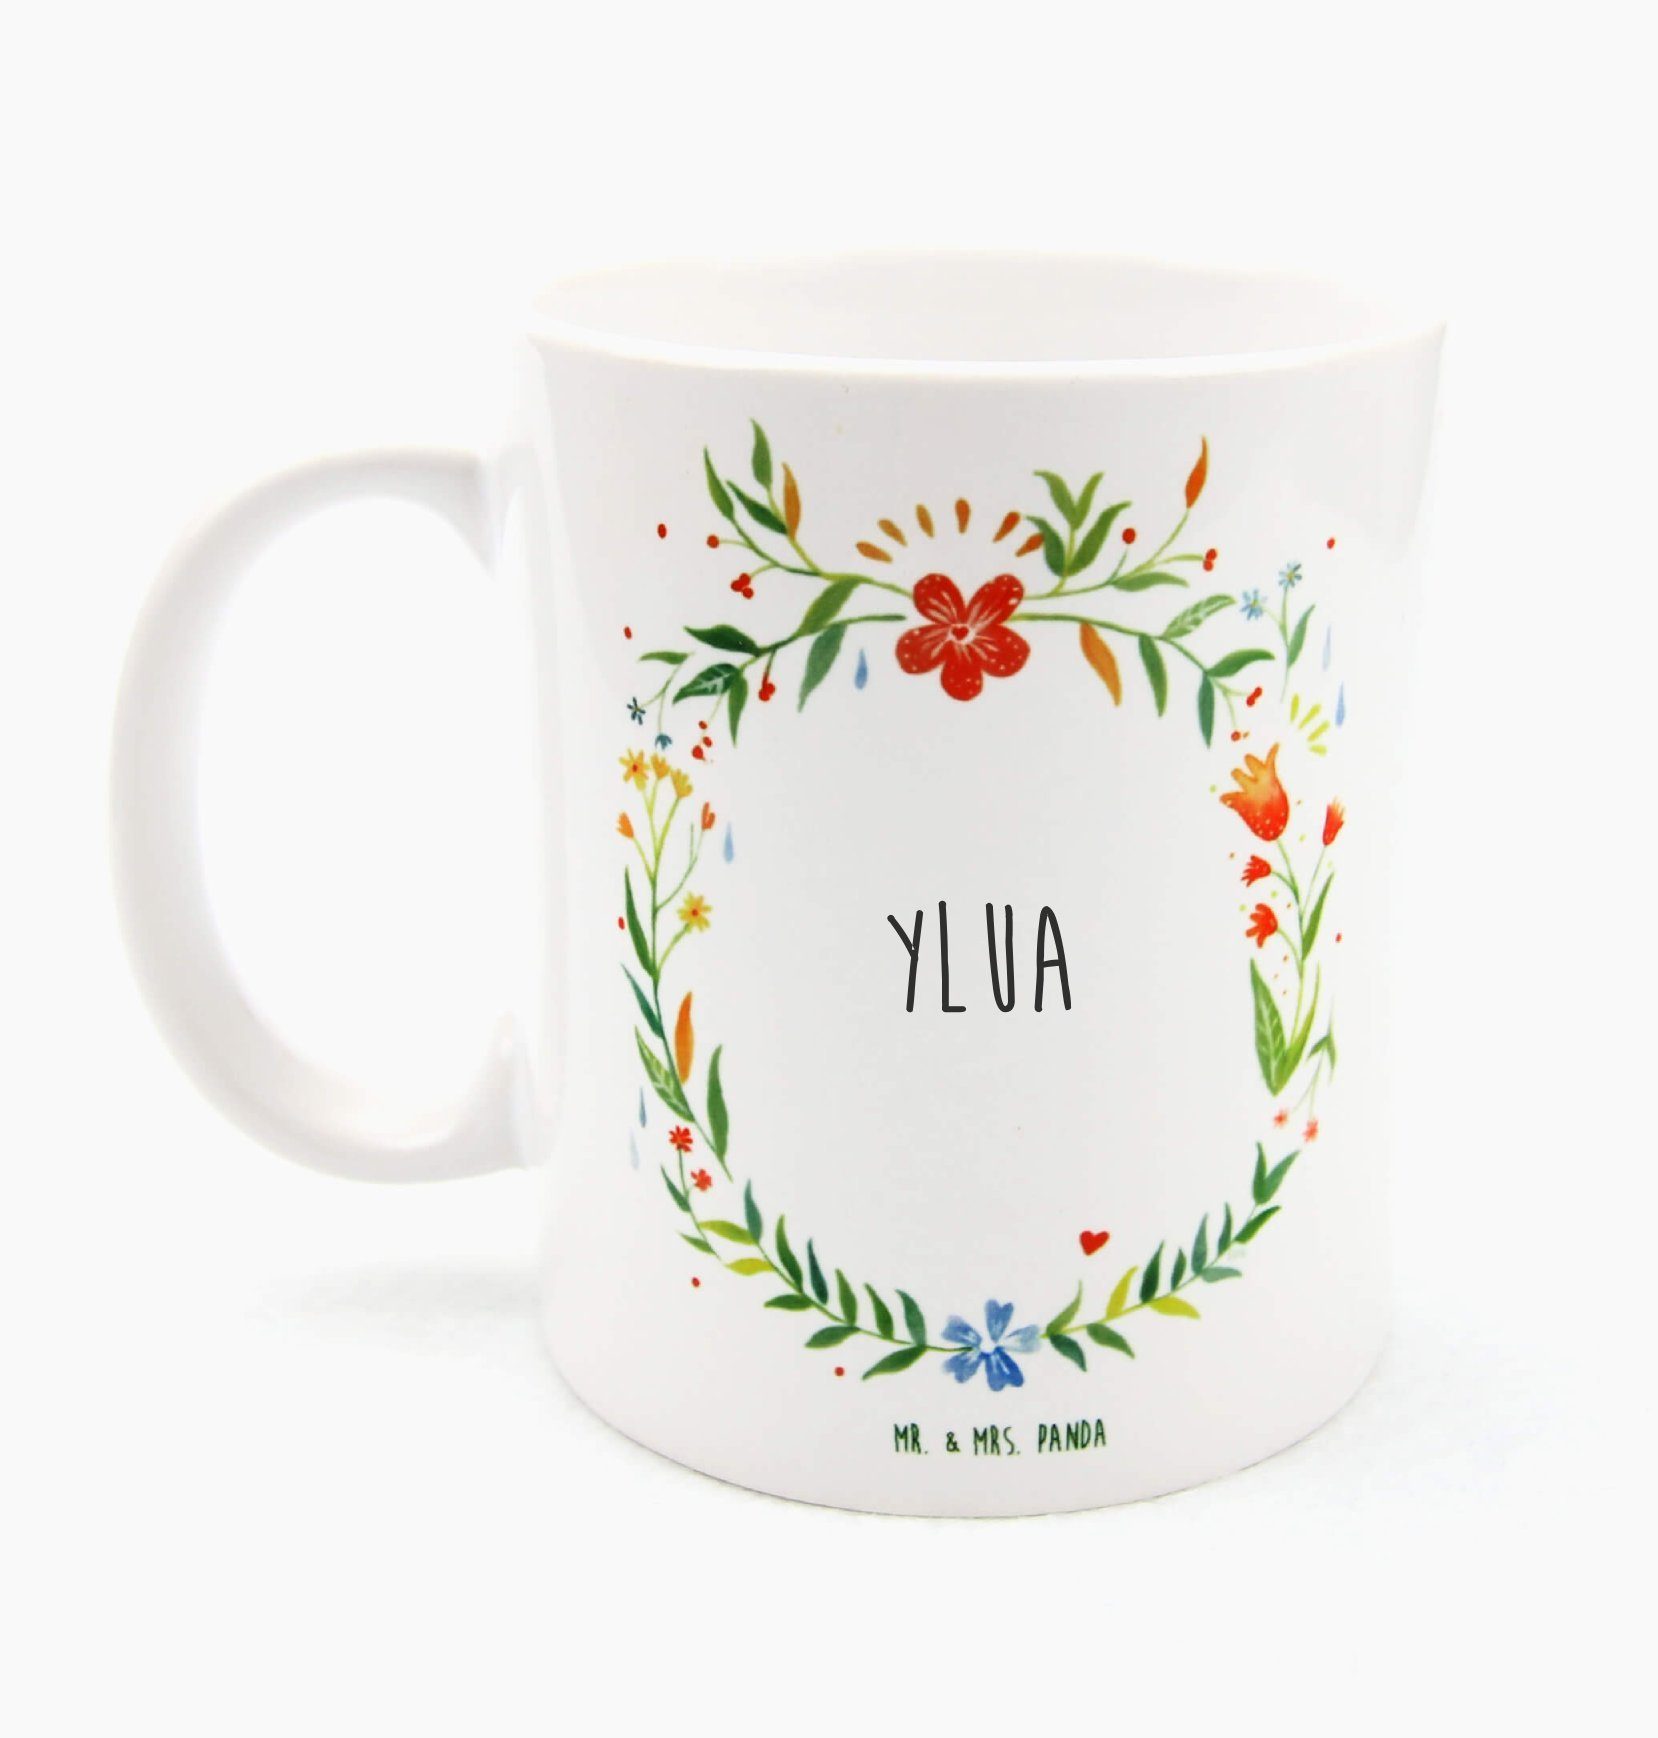 Mr. & Mrs. Panda Tasse Ylua - Geschenk, Geschenk Tasse, Teetasse, Tasse Sprüche, Büro Tasse, Keramik